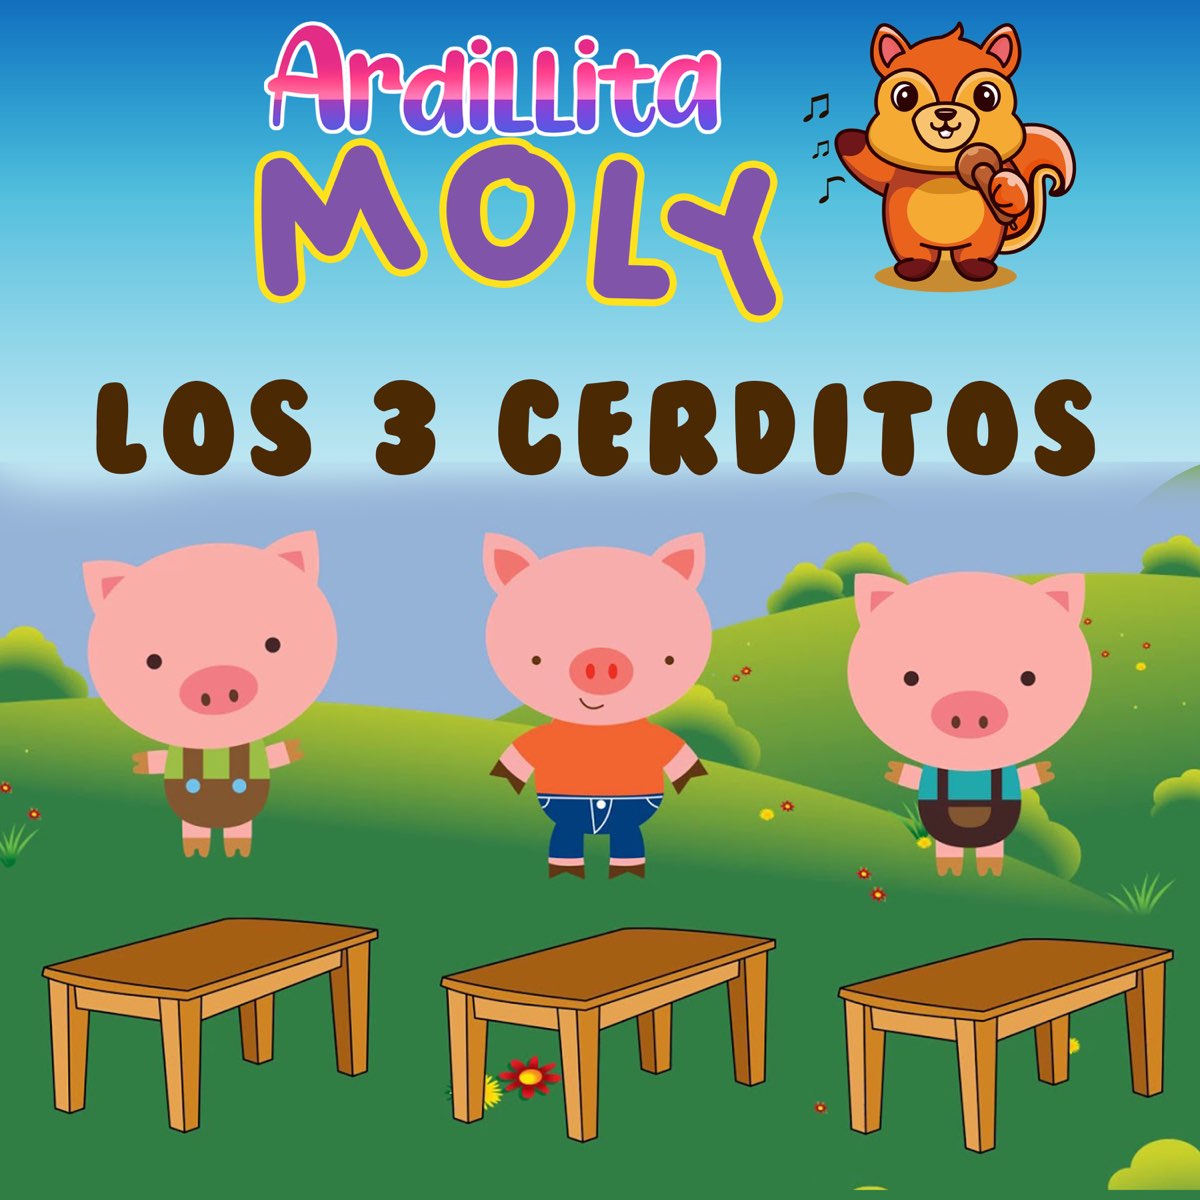 Los Tres Cerditos by Ardillita Moly on Apple Music